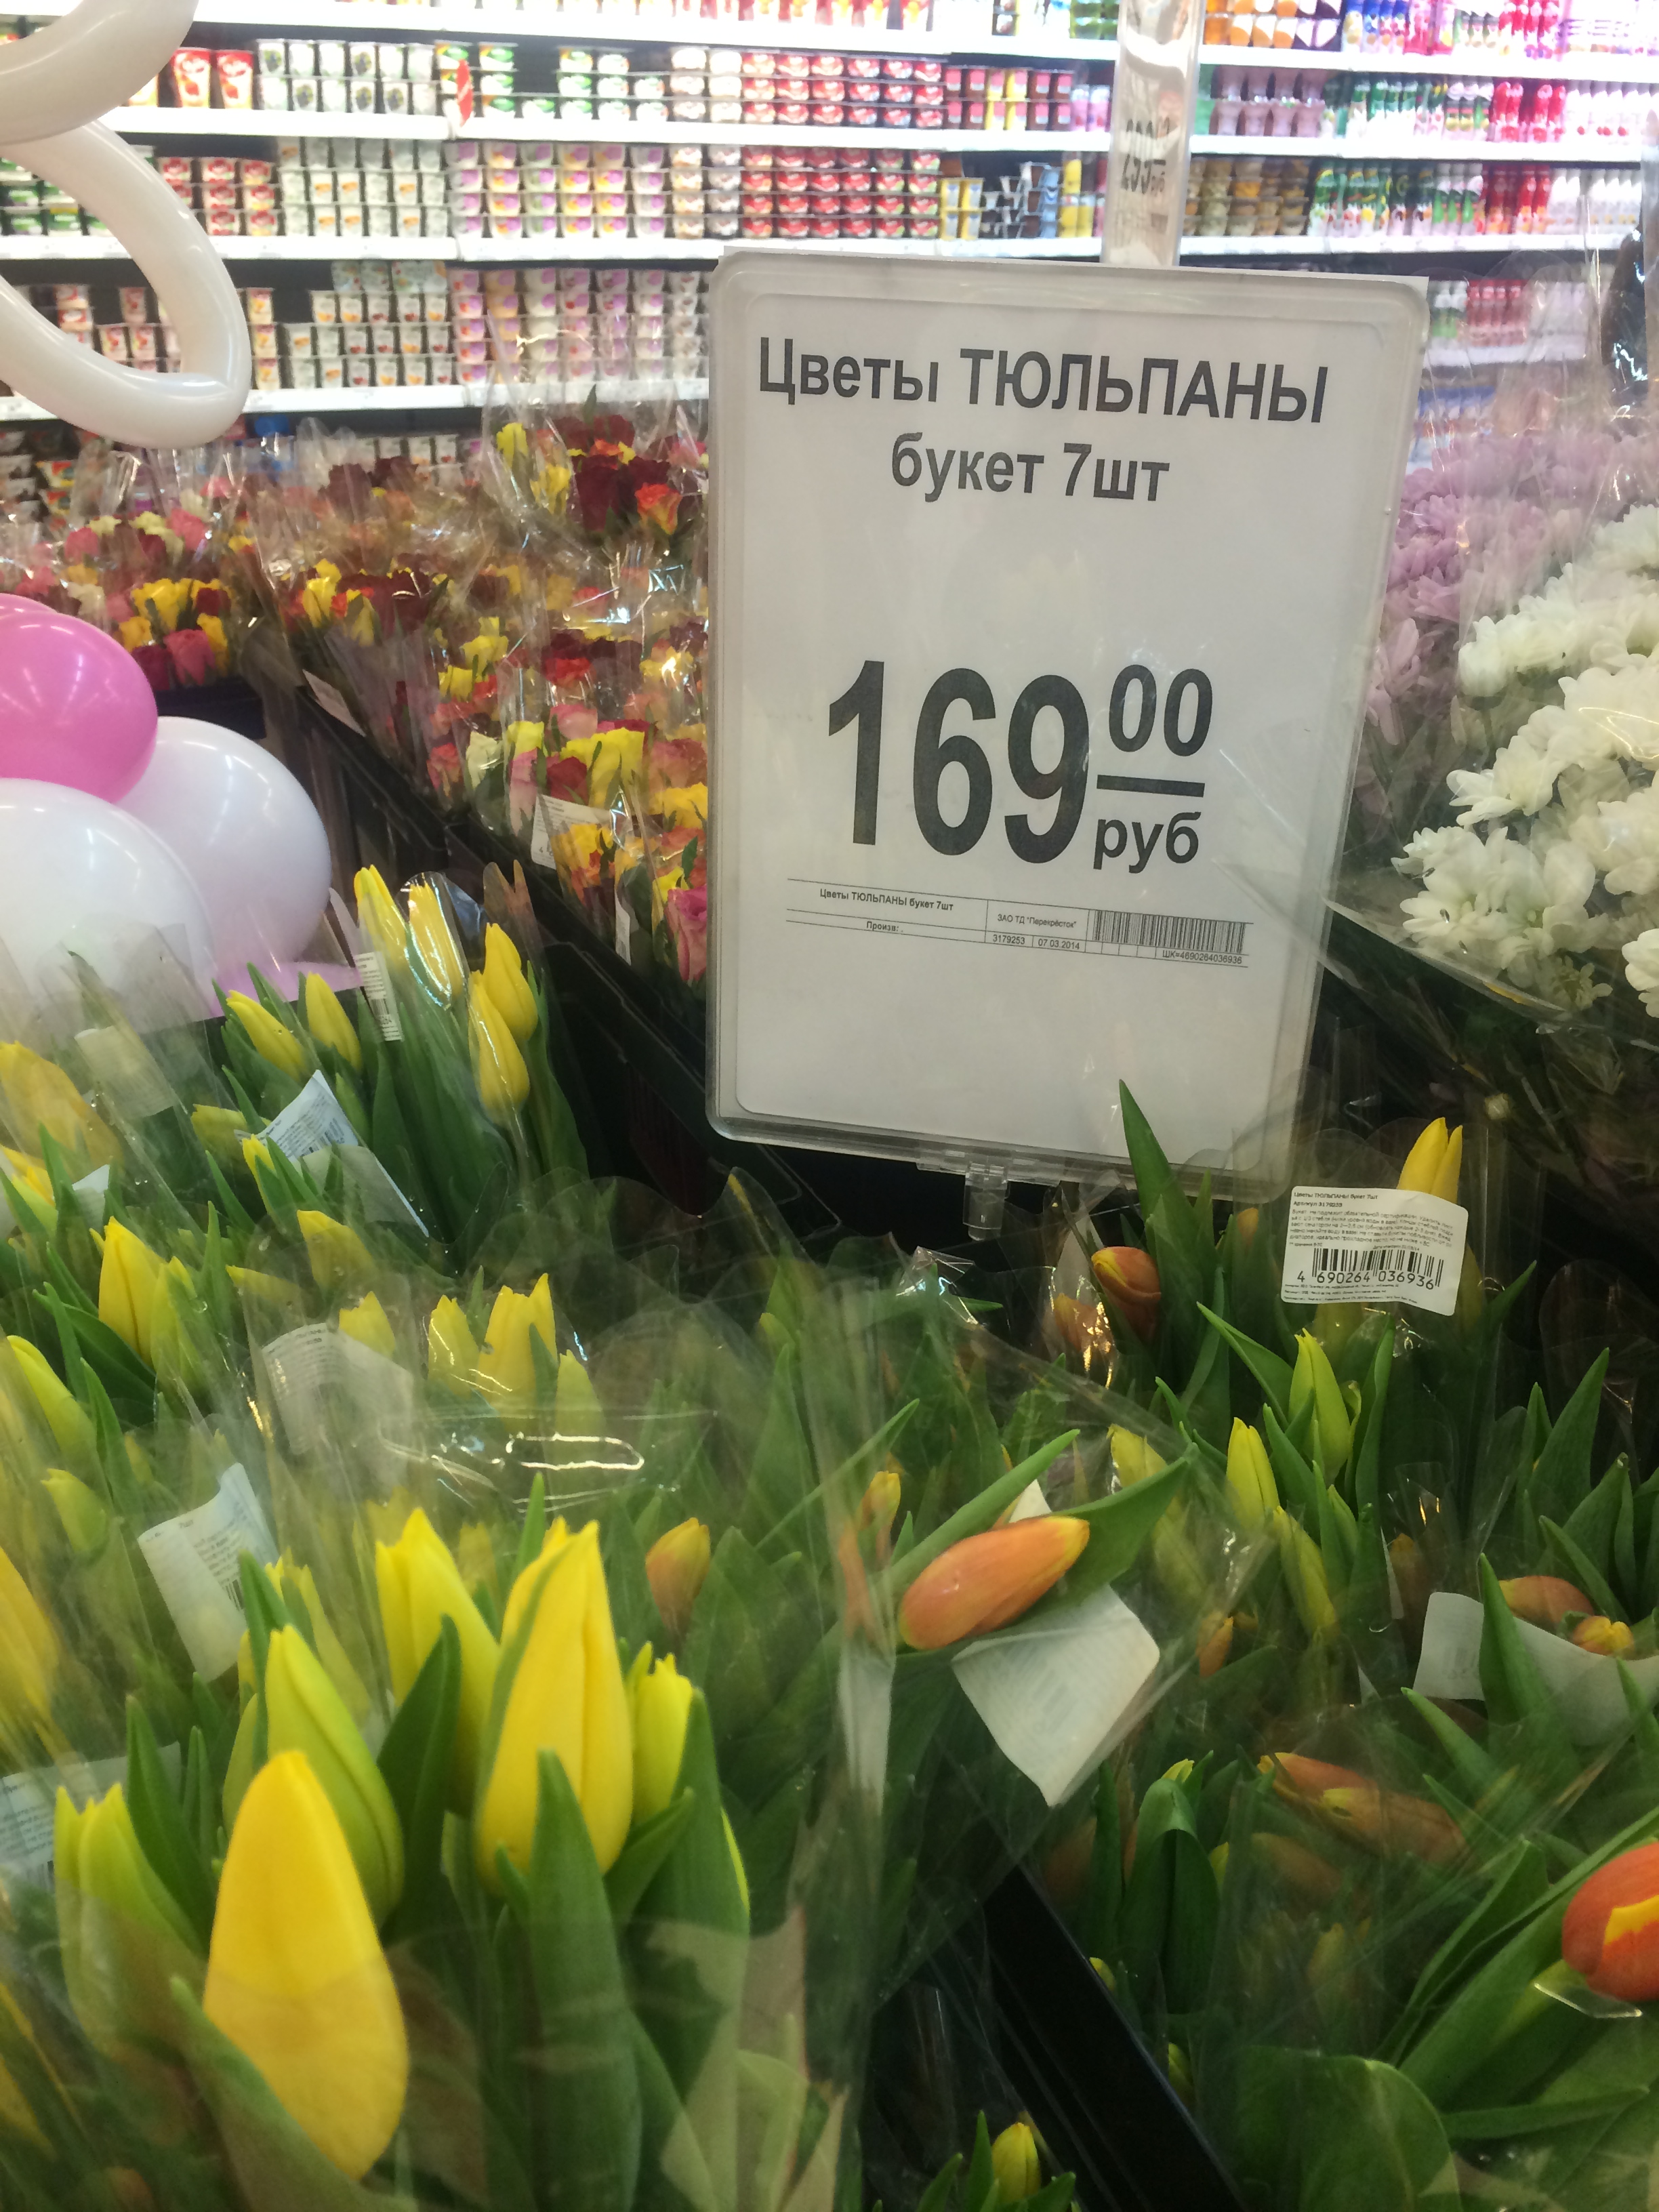 Купить тюльпаны в улан удэ